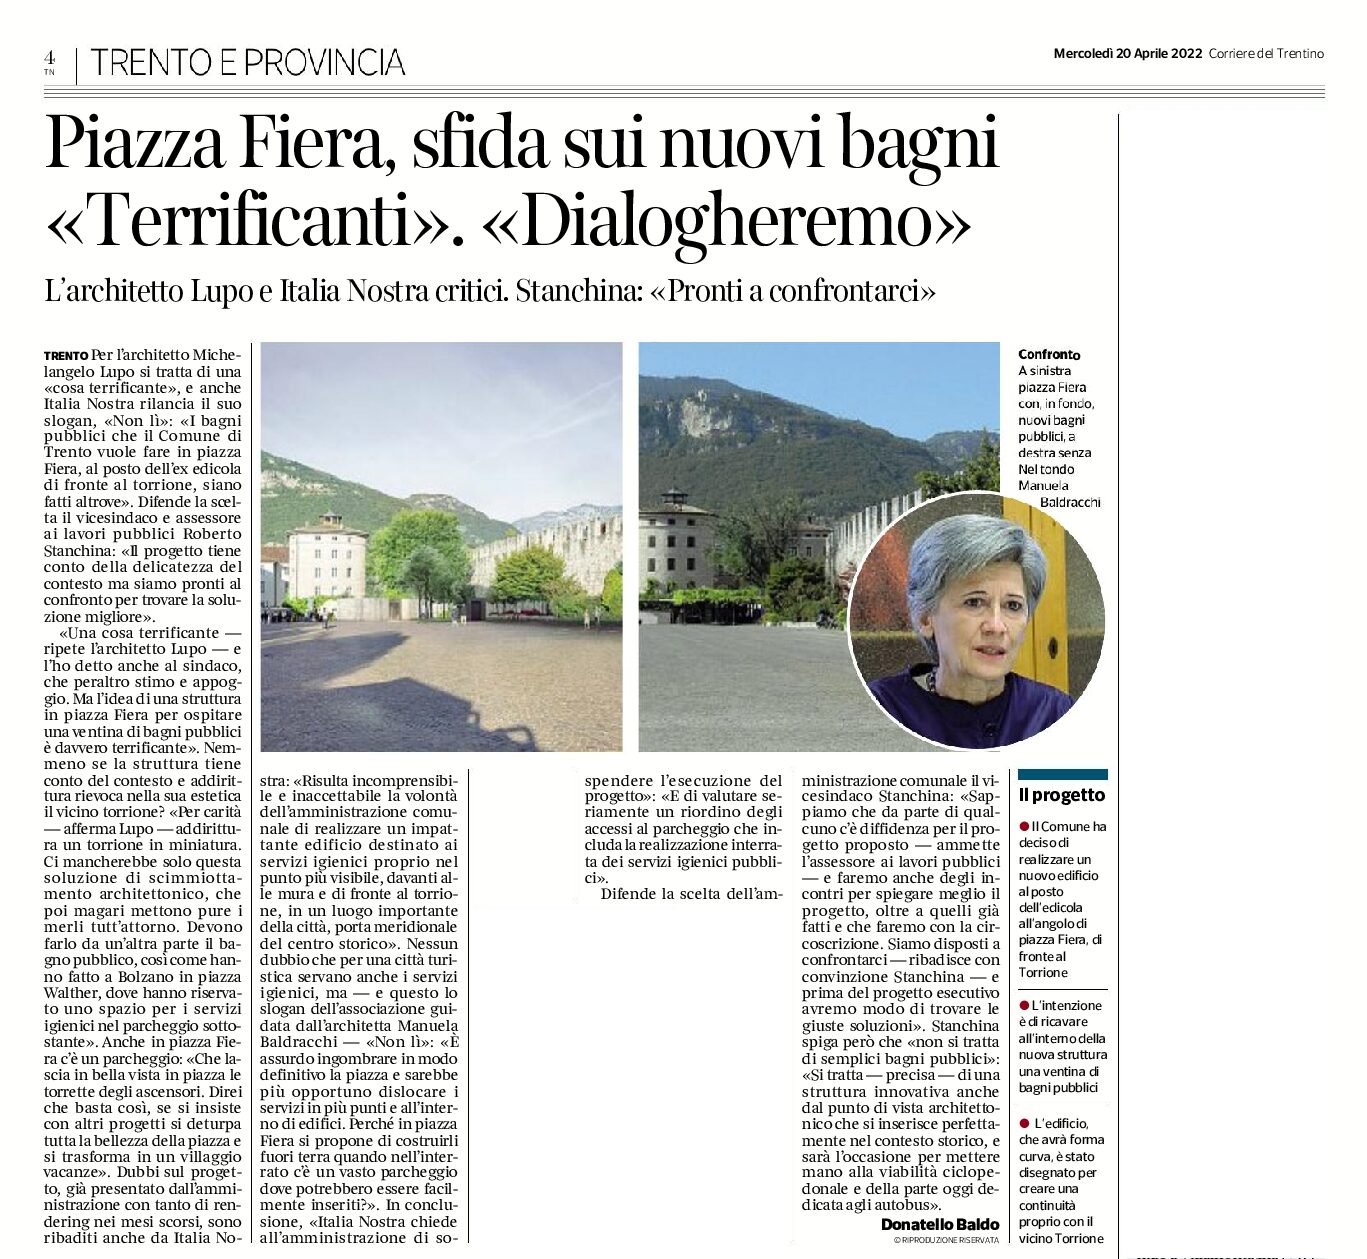 Trento, piazza Fiera: sfida sui nuovi bagni, “no” di Italia Nostra e Lupo